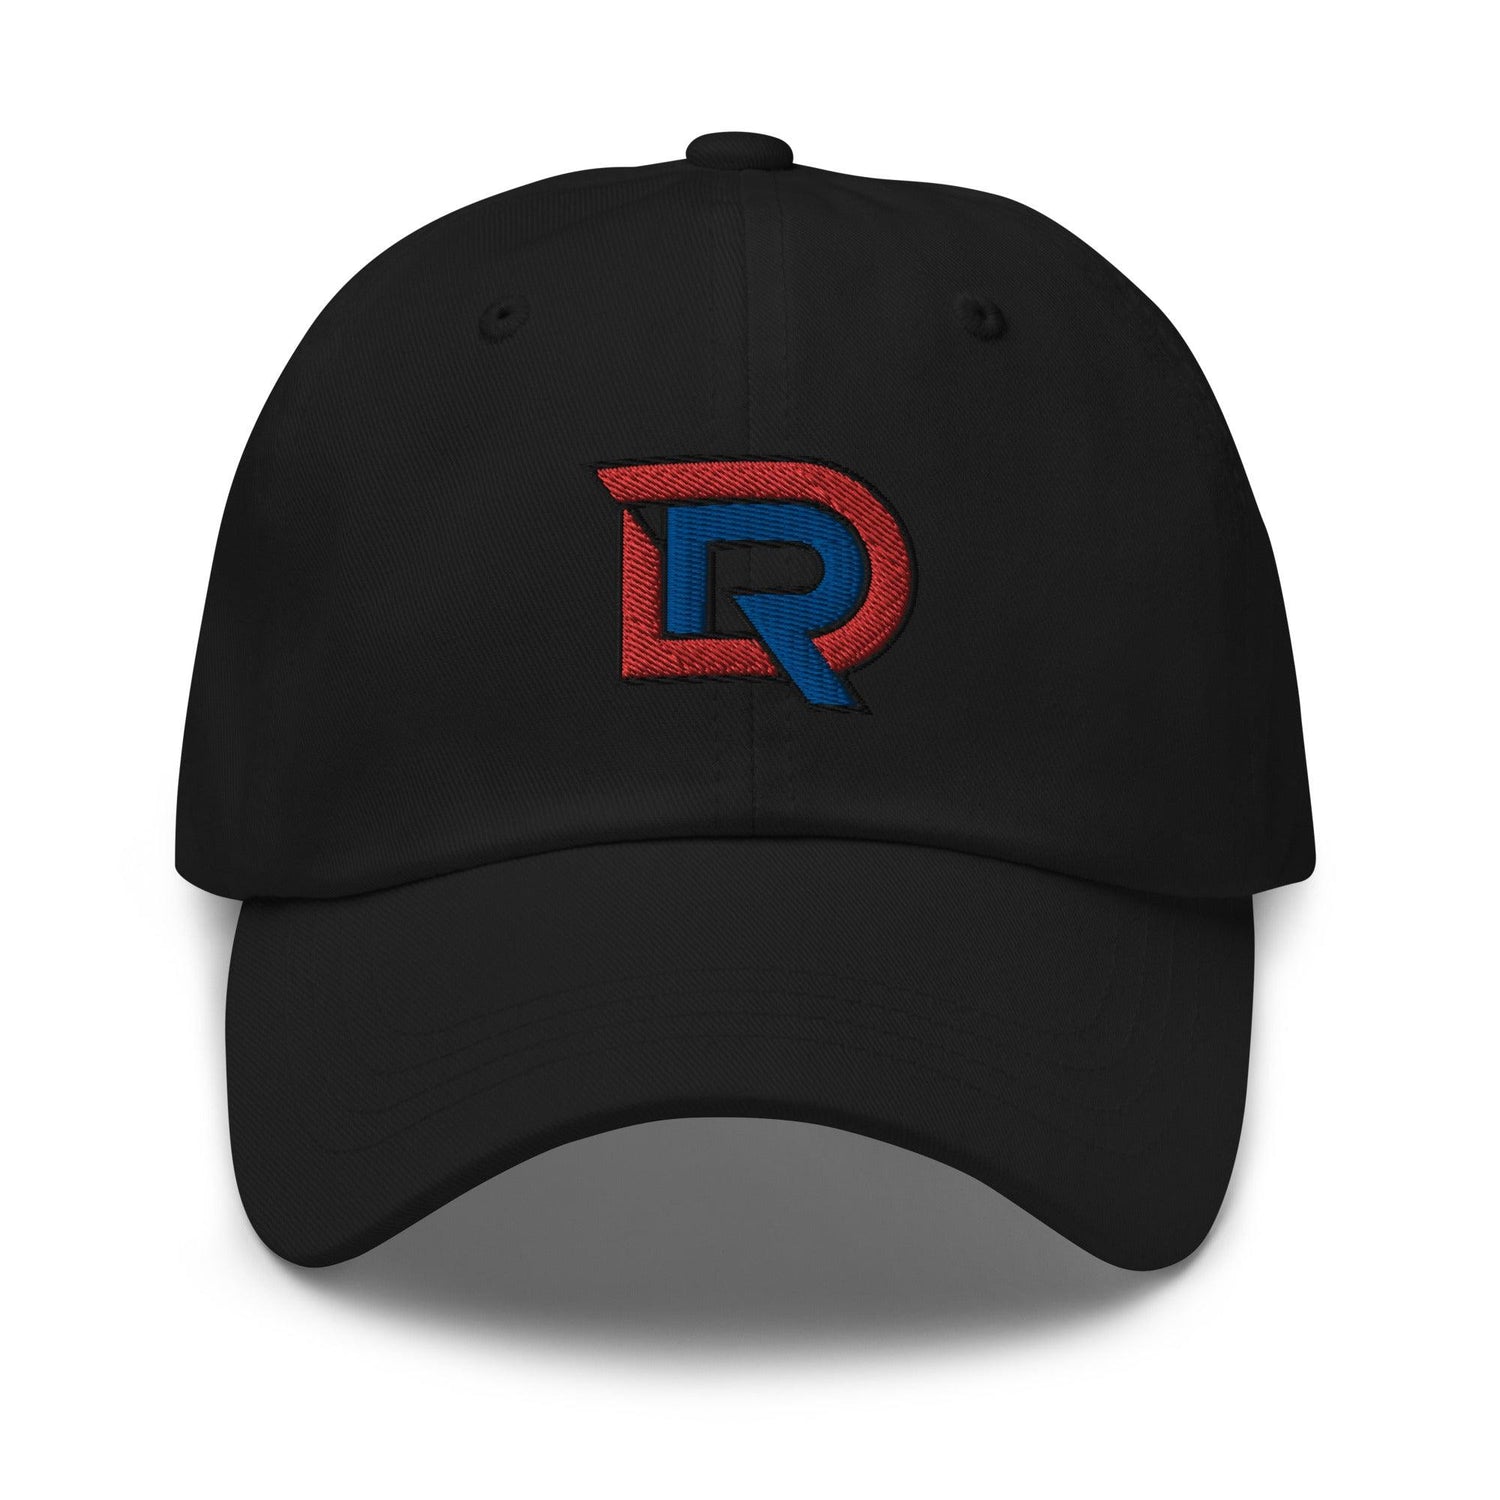 Darrione Rogers "Elite" hat - Fan Arch